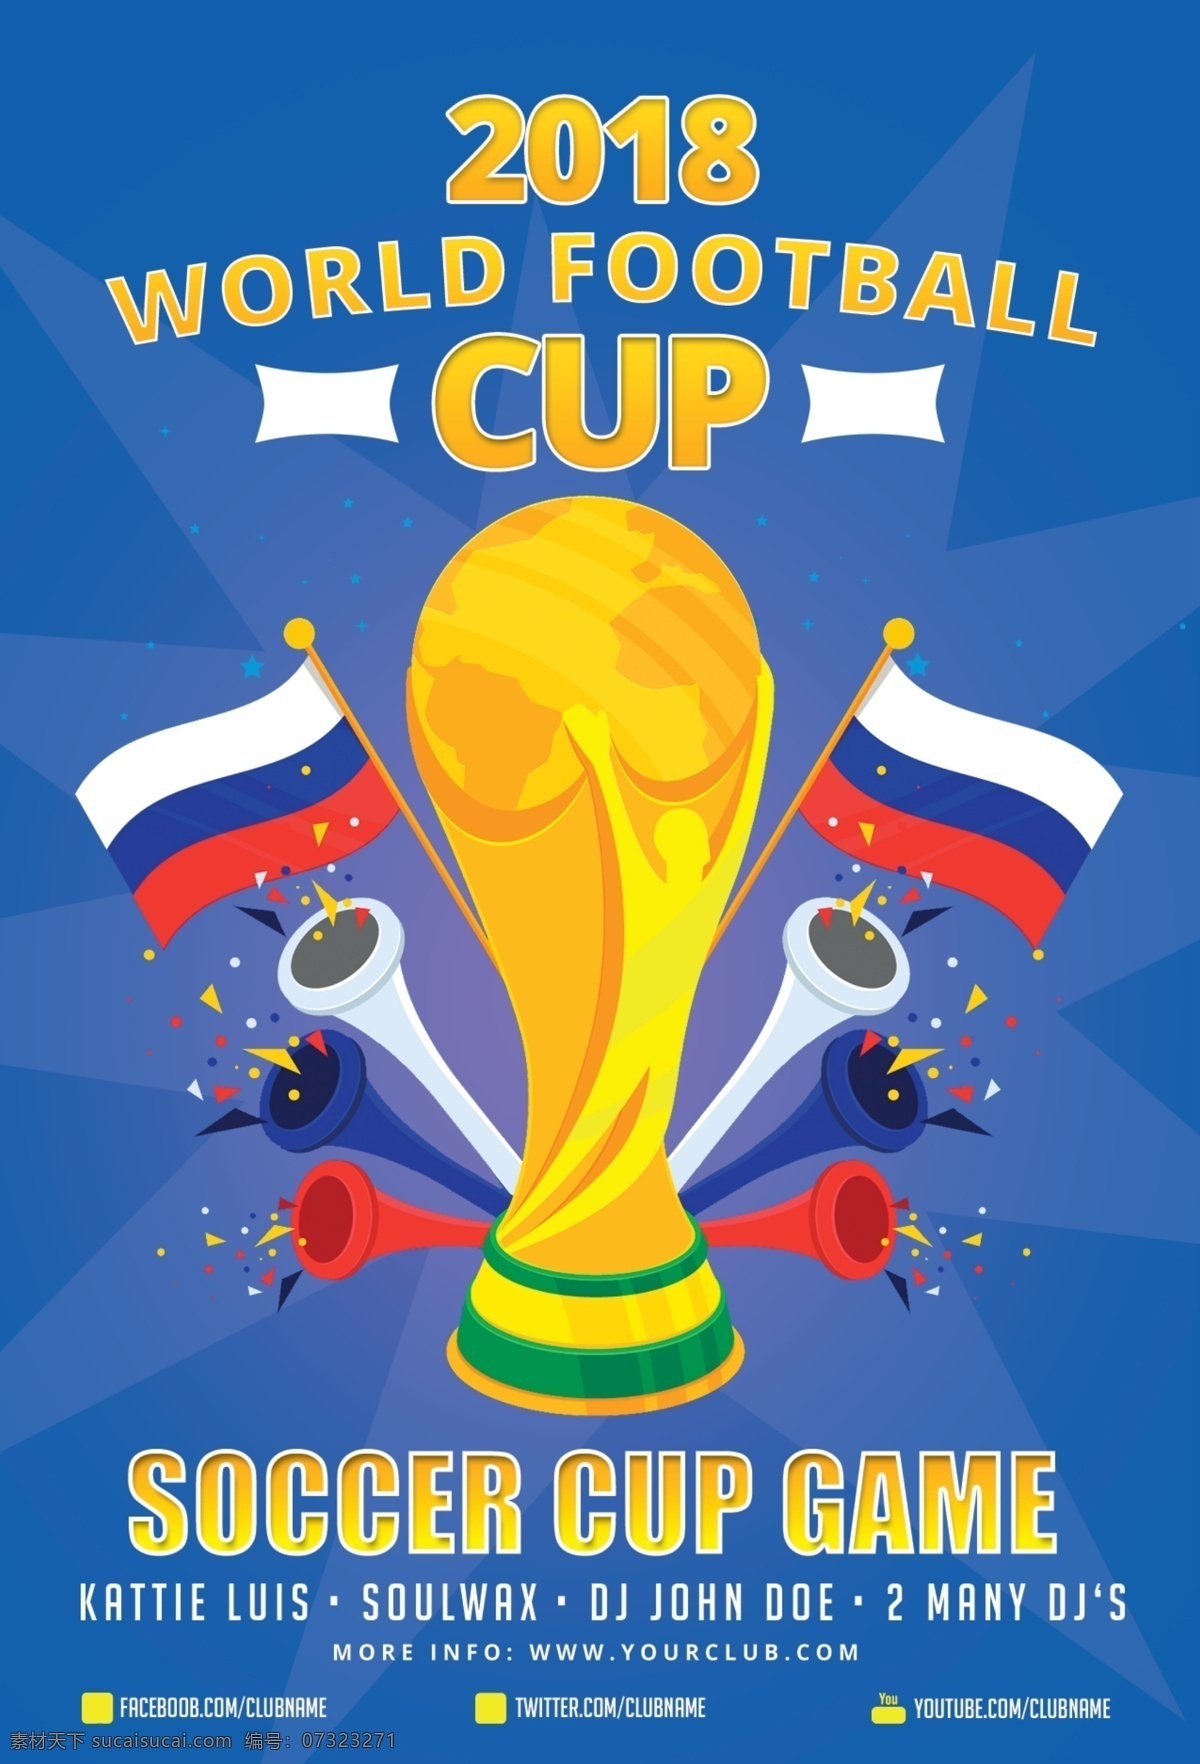 世界足球传单 美国 酒吧 啤酒 束 锦标赛 杯子 事件 facebook 封面 传单 足球 足球传单